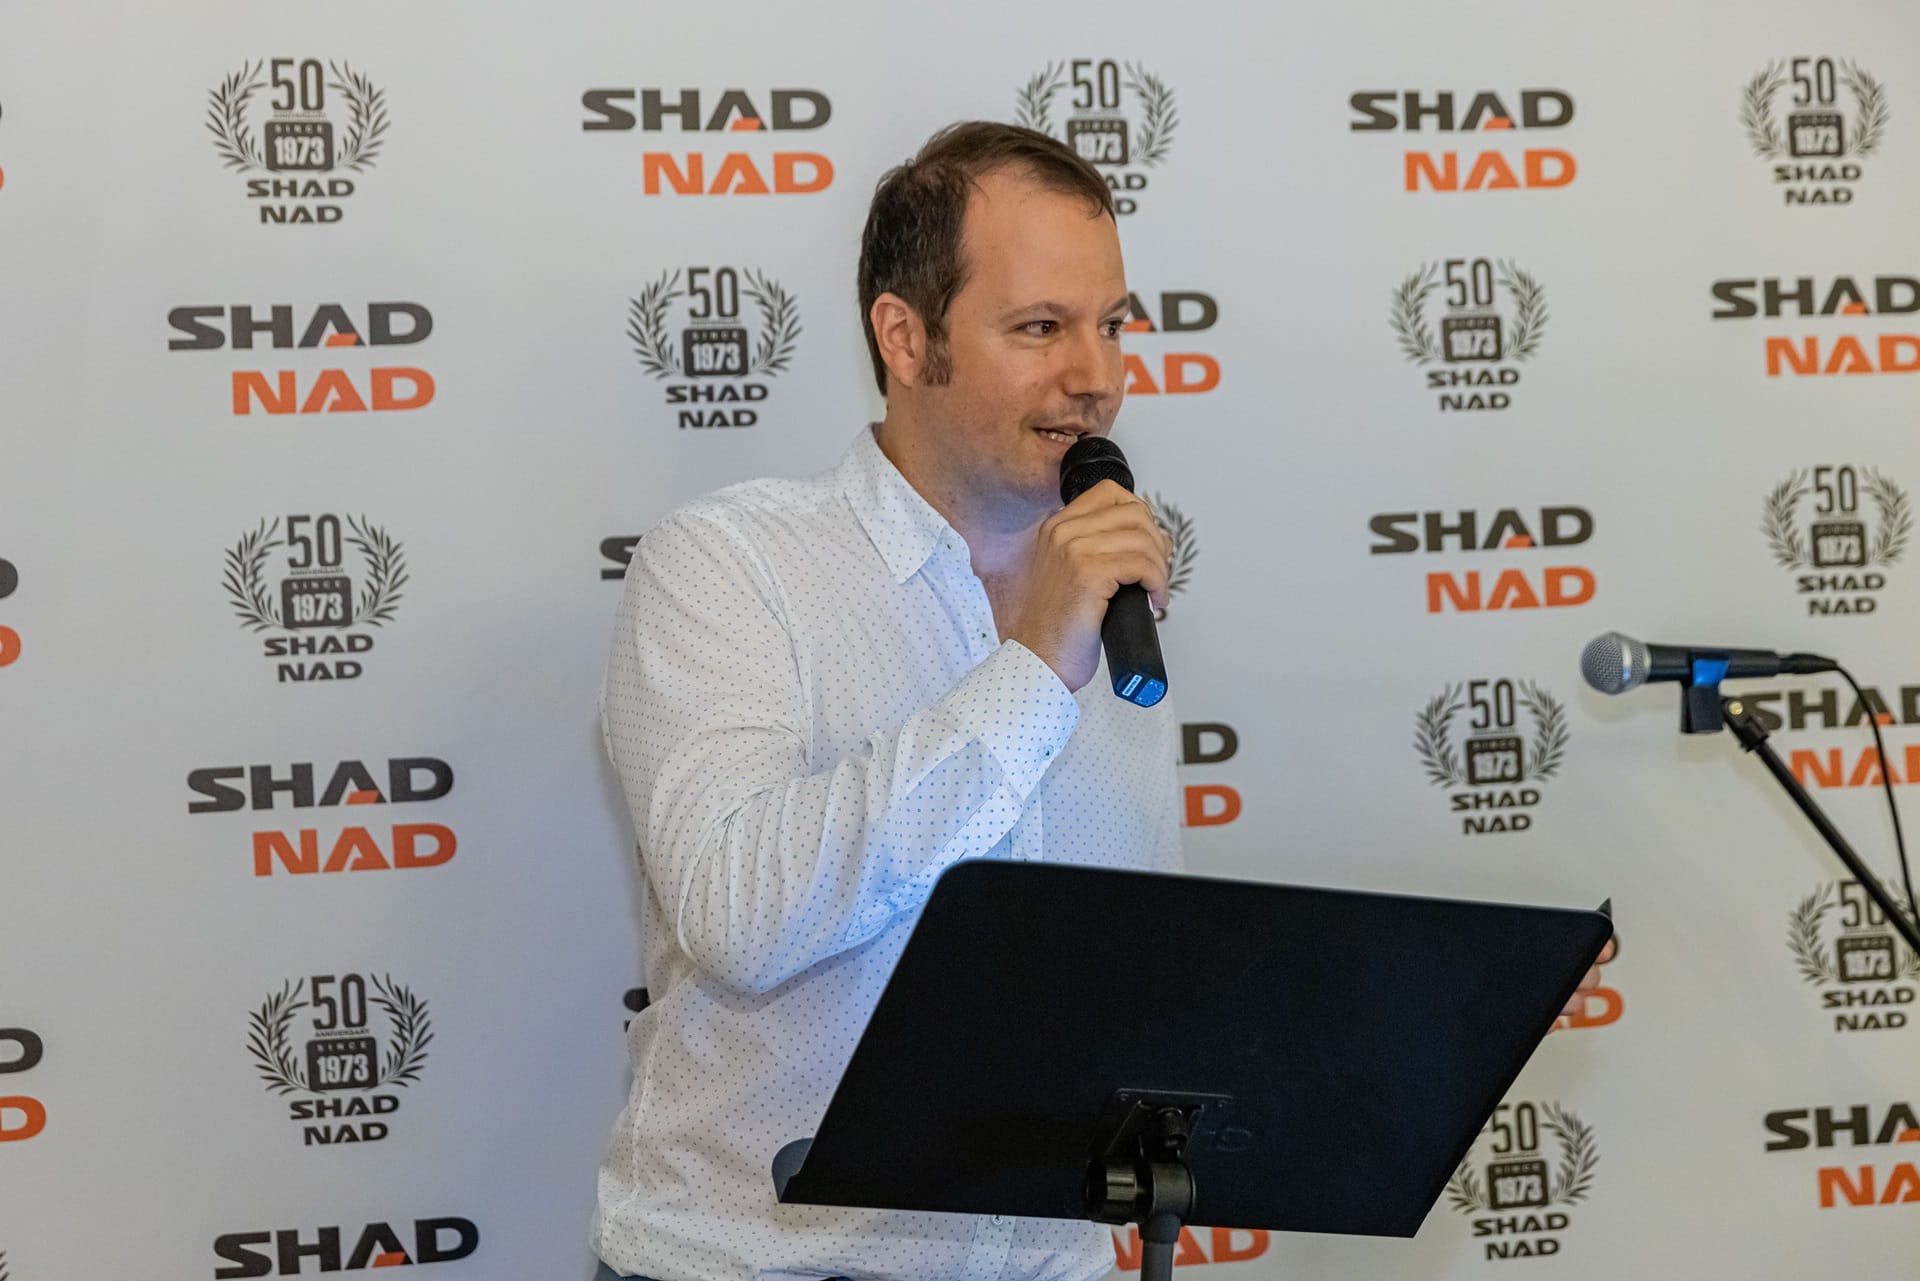 SHAD-NAD: 50 años de constante evolución